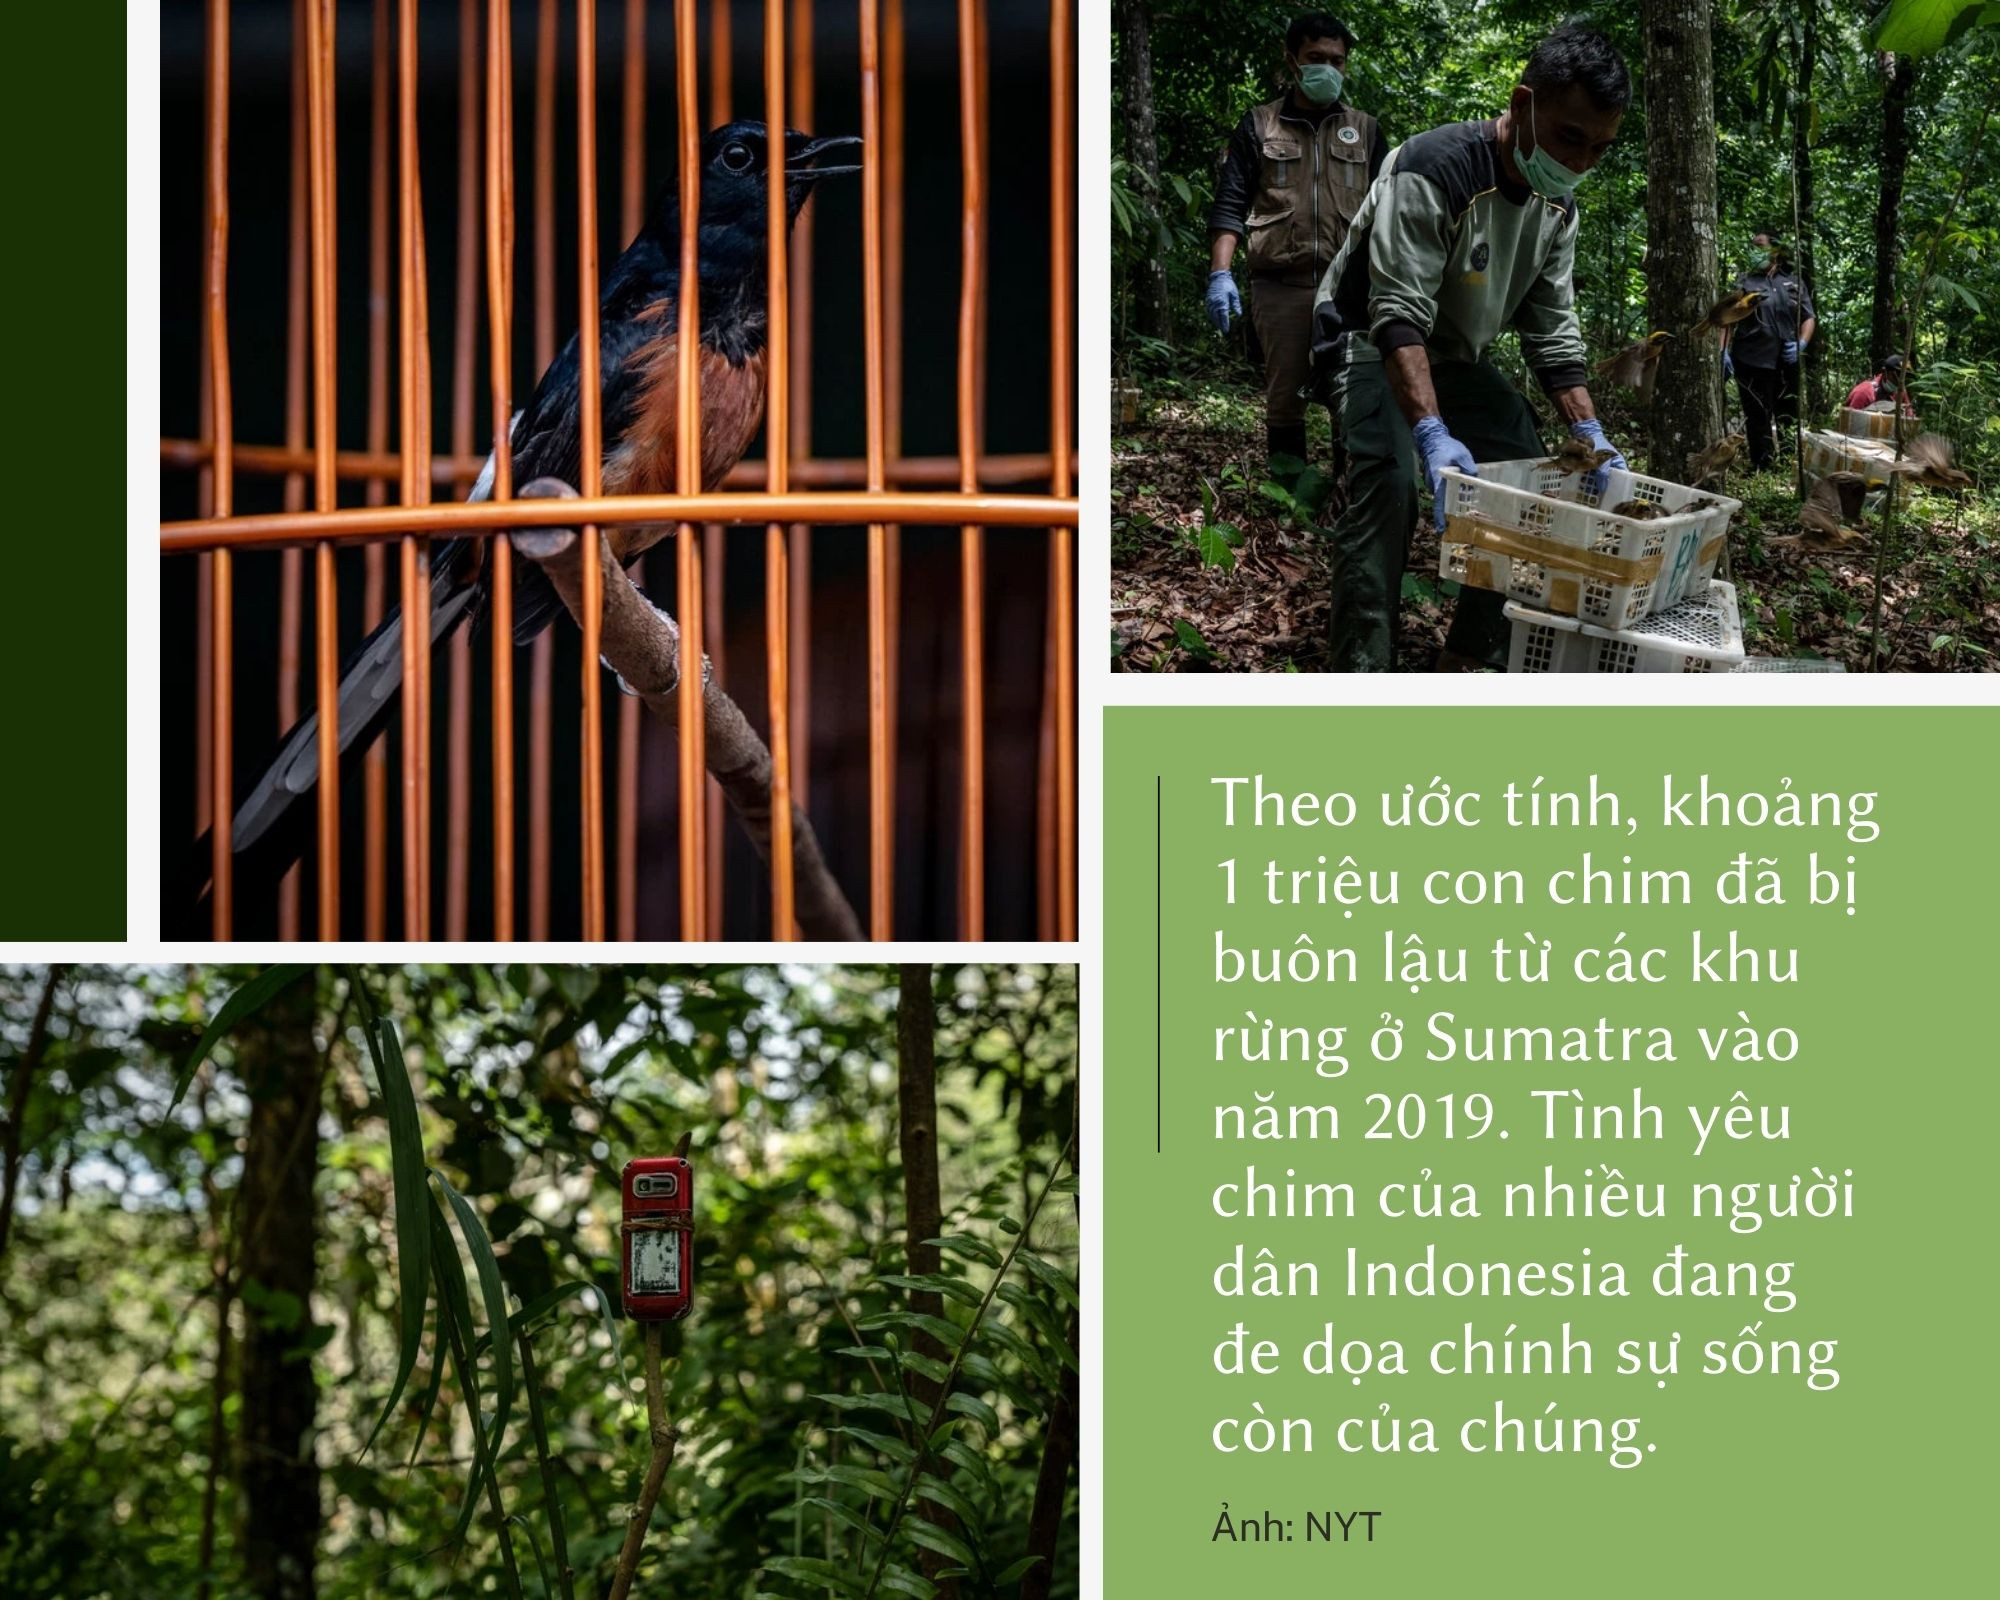 Giống lan đột biến ở Việt Nam, Indonesia bùng lên cơn sốt chim cảnh: Trò tiêu khiển giúp nhiều người đổi đời, nhưng ẩn chứa nhiều bí mật bất chính - Ảnh 7.